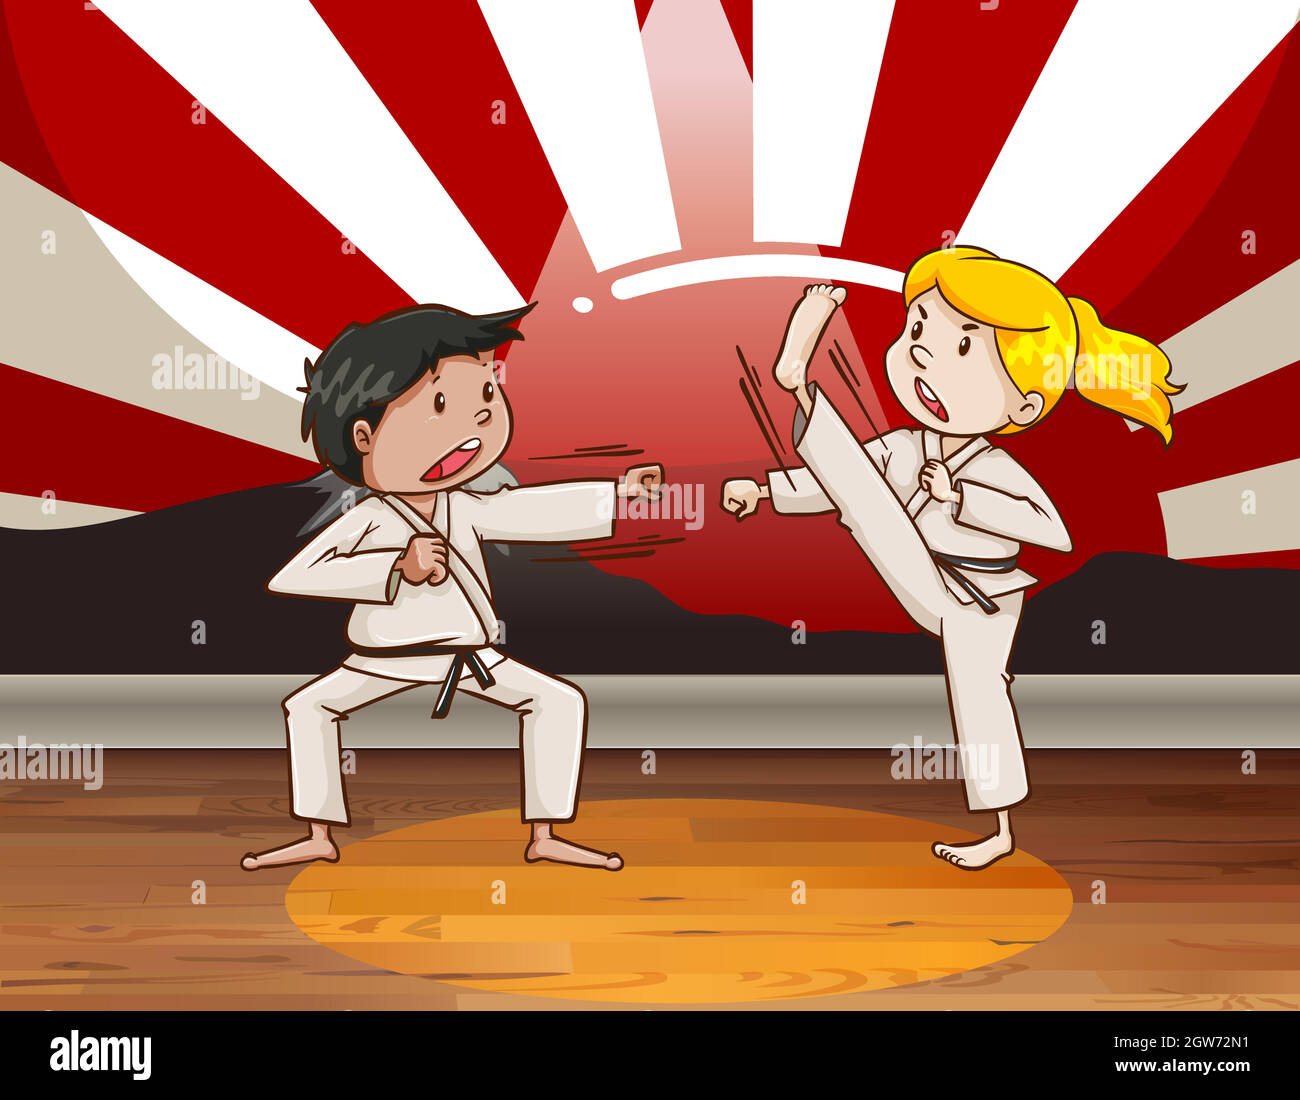 Children fighting martial arts Stock Vector